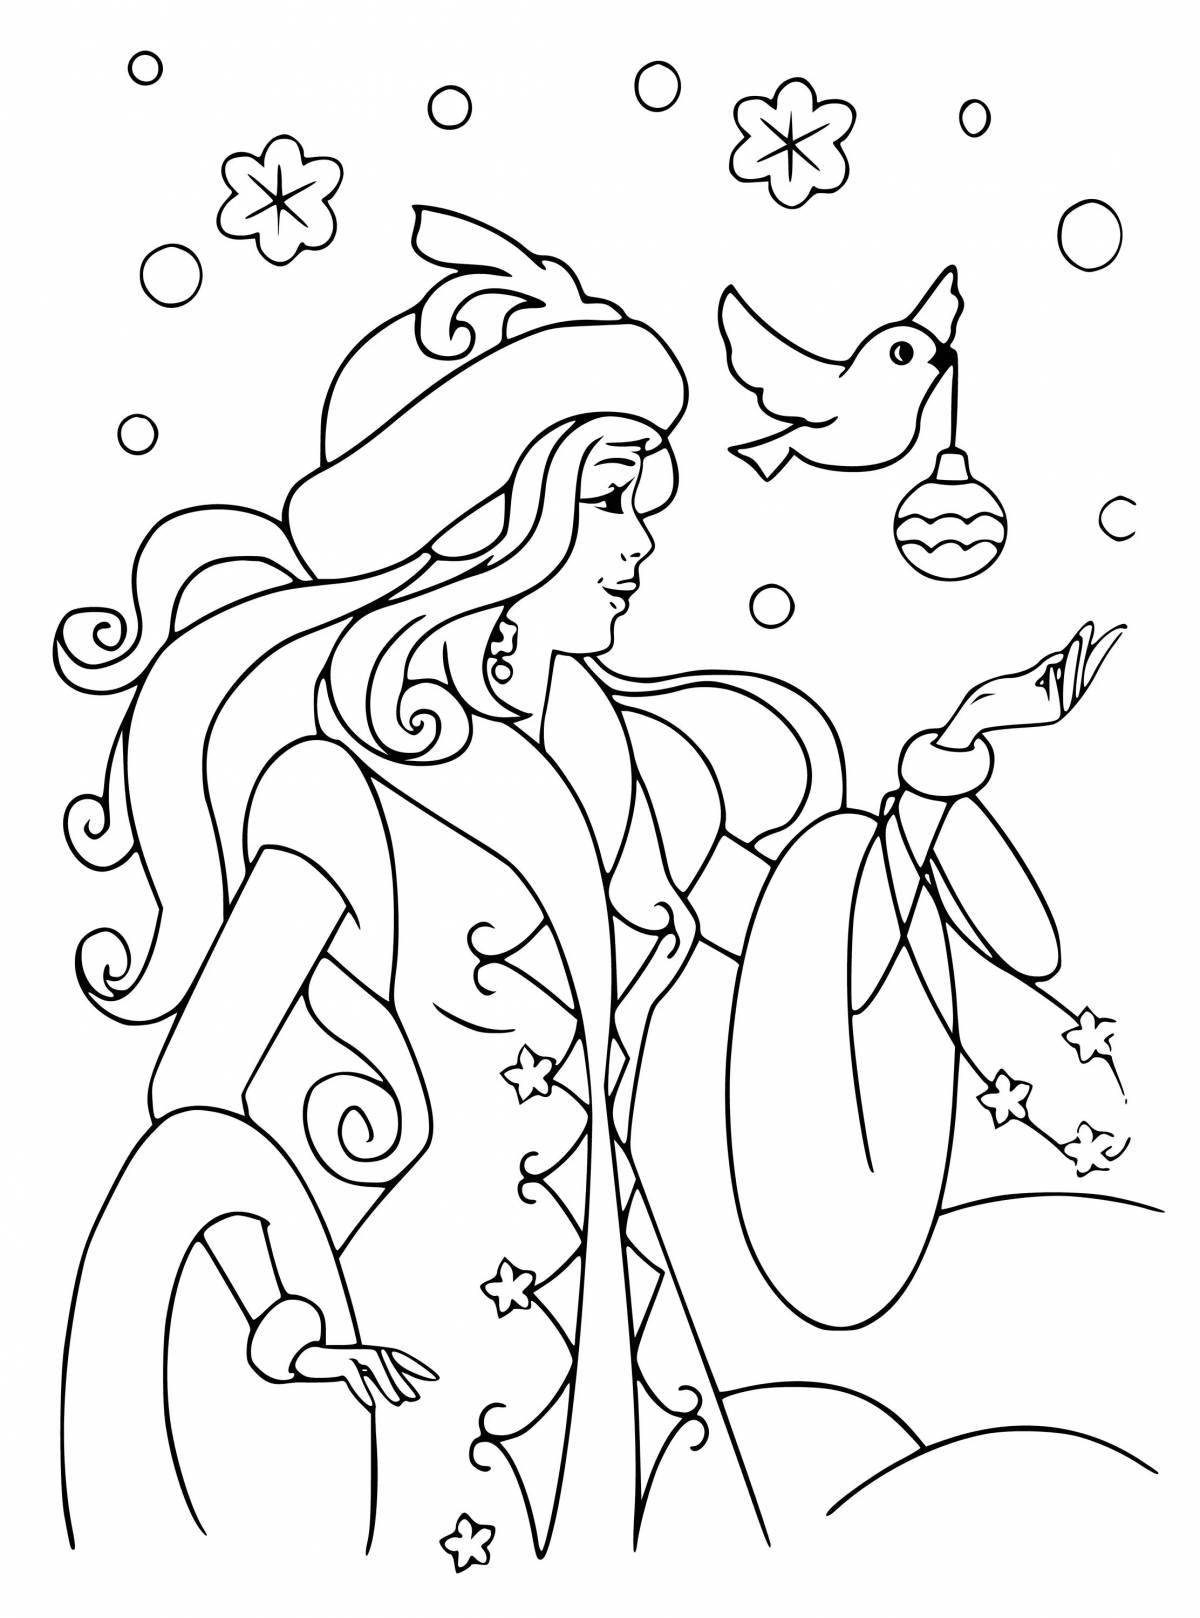 Coloring book magical snow maiden